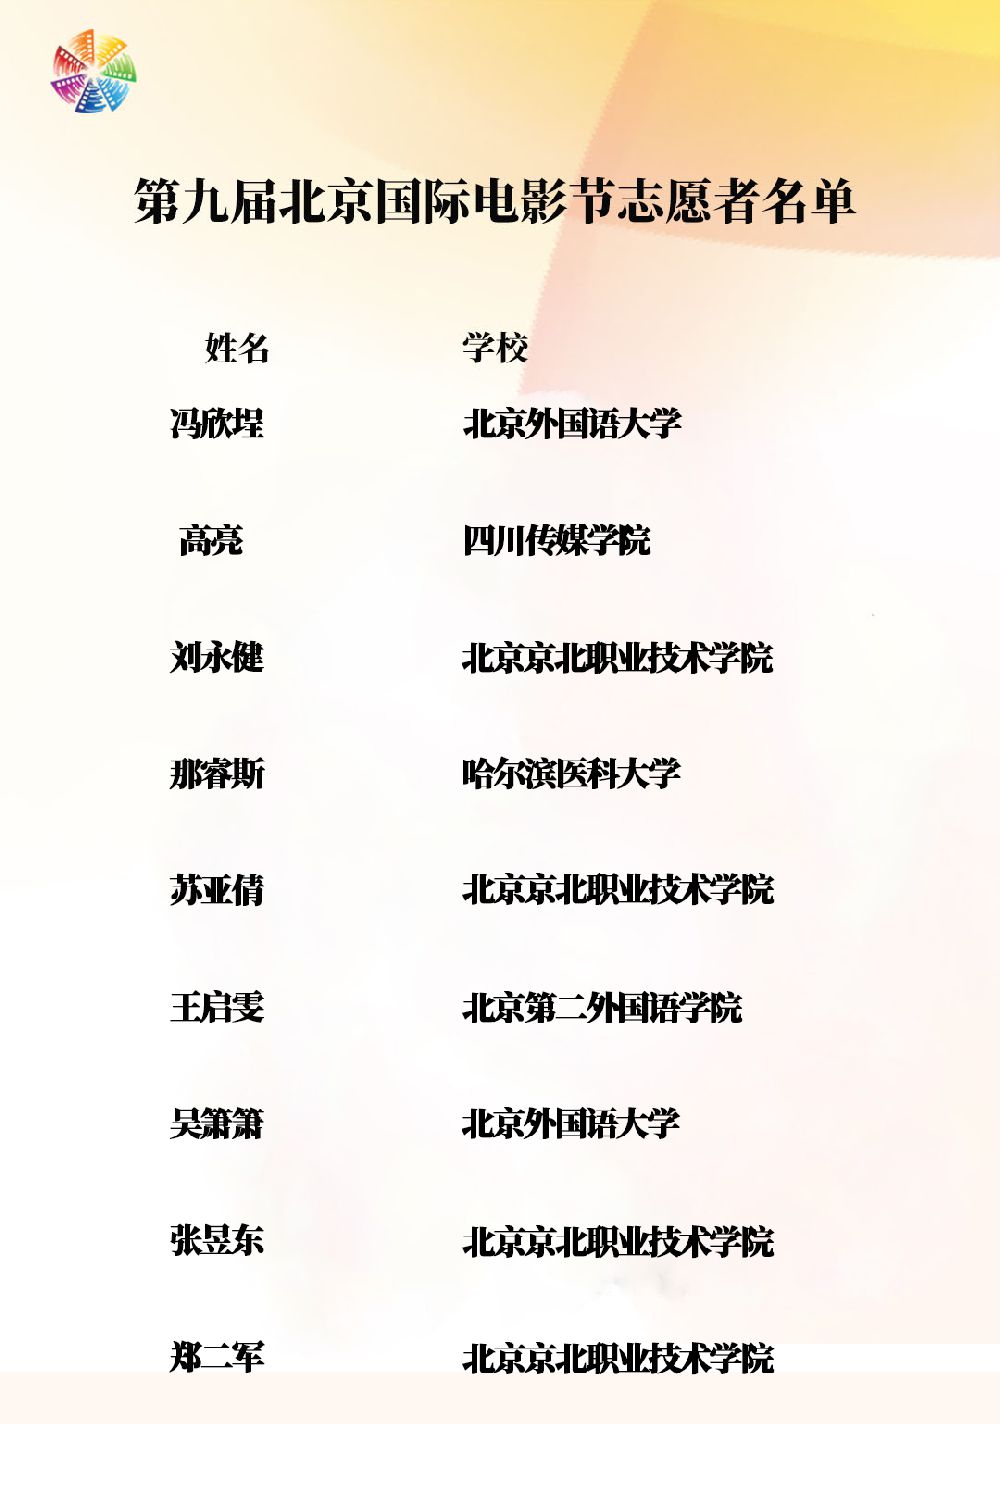 2019北京国际电影节志愿者名单一览